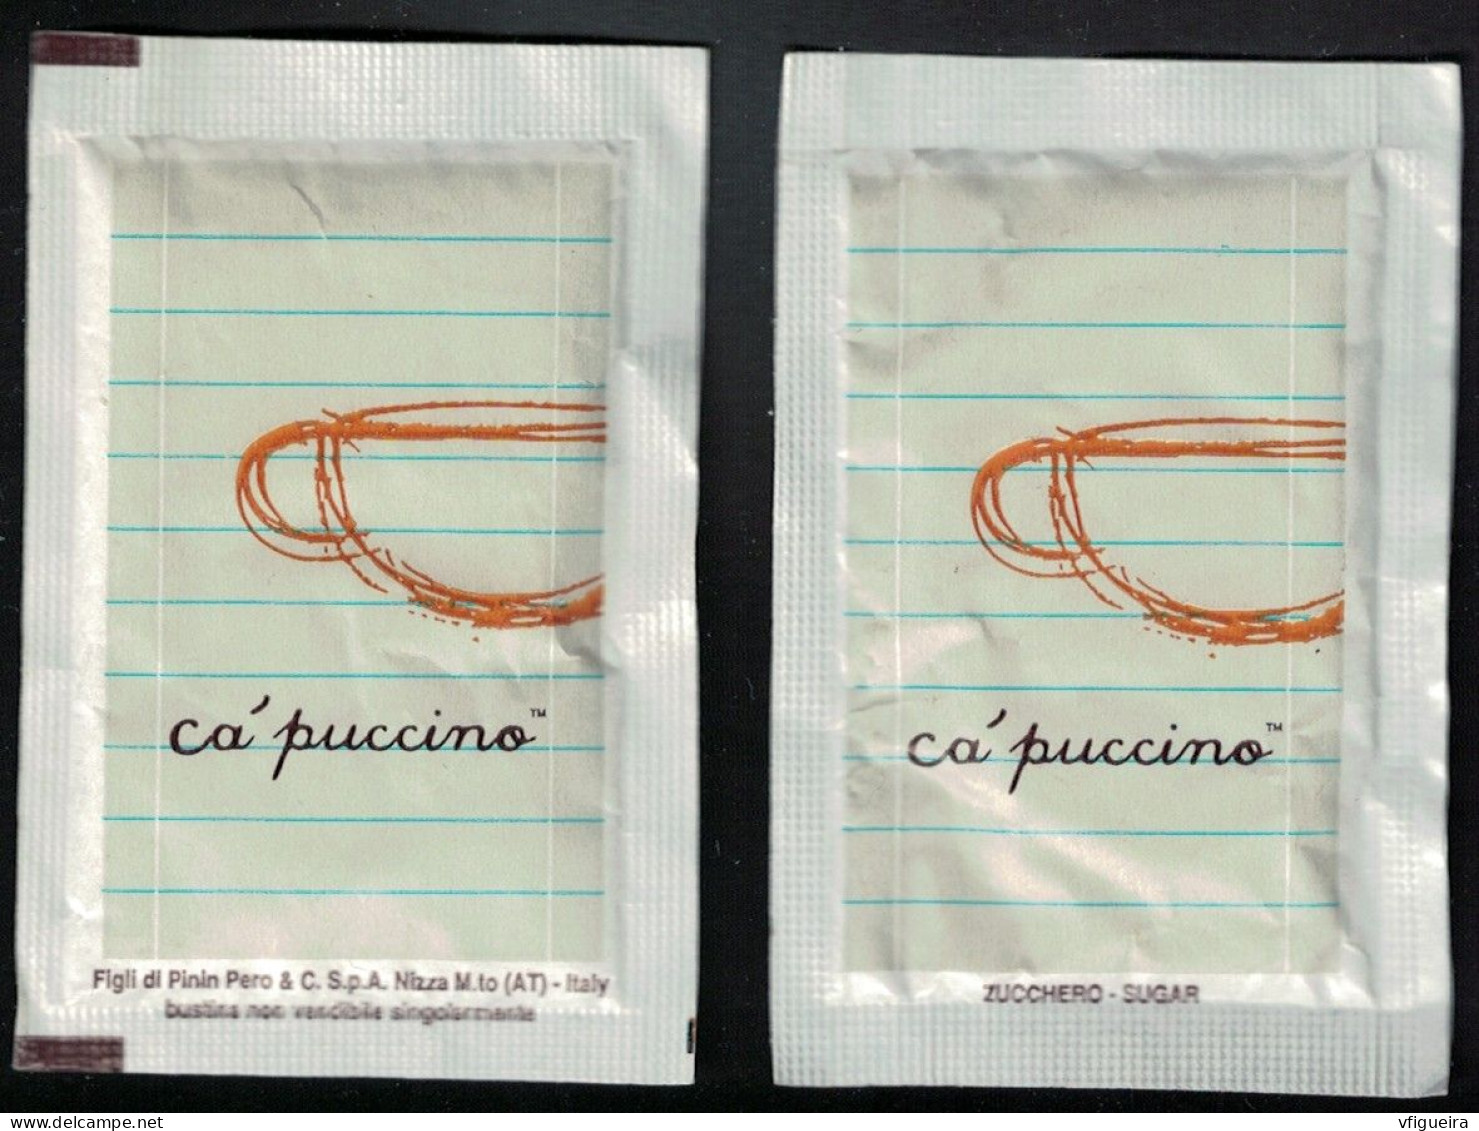 Italie Sachet Sucre Sugar Bag Capuccino Figli Di Pinin Pero White Blanc - Sucres